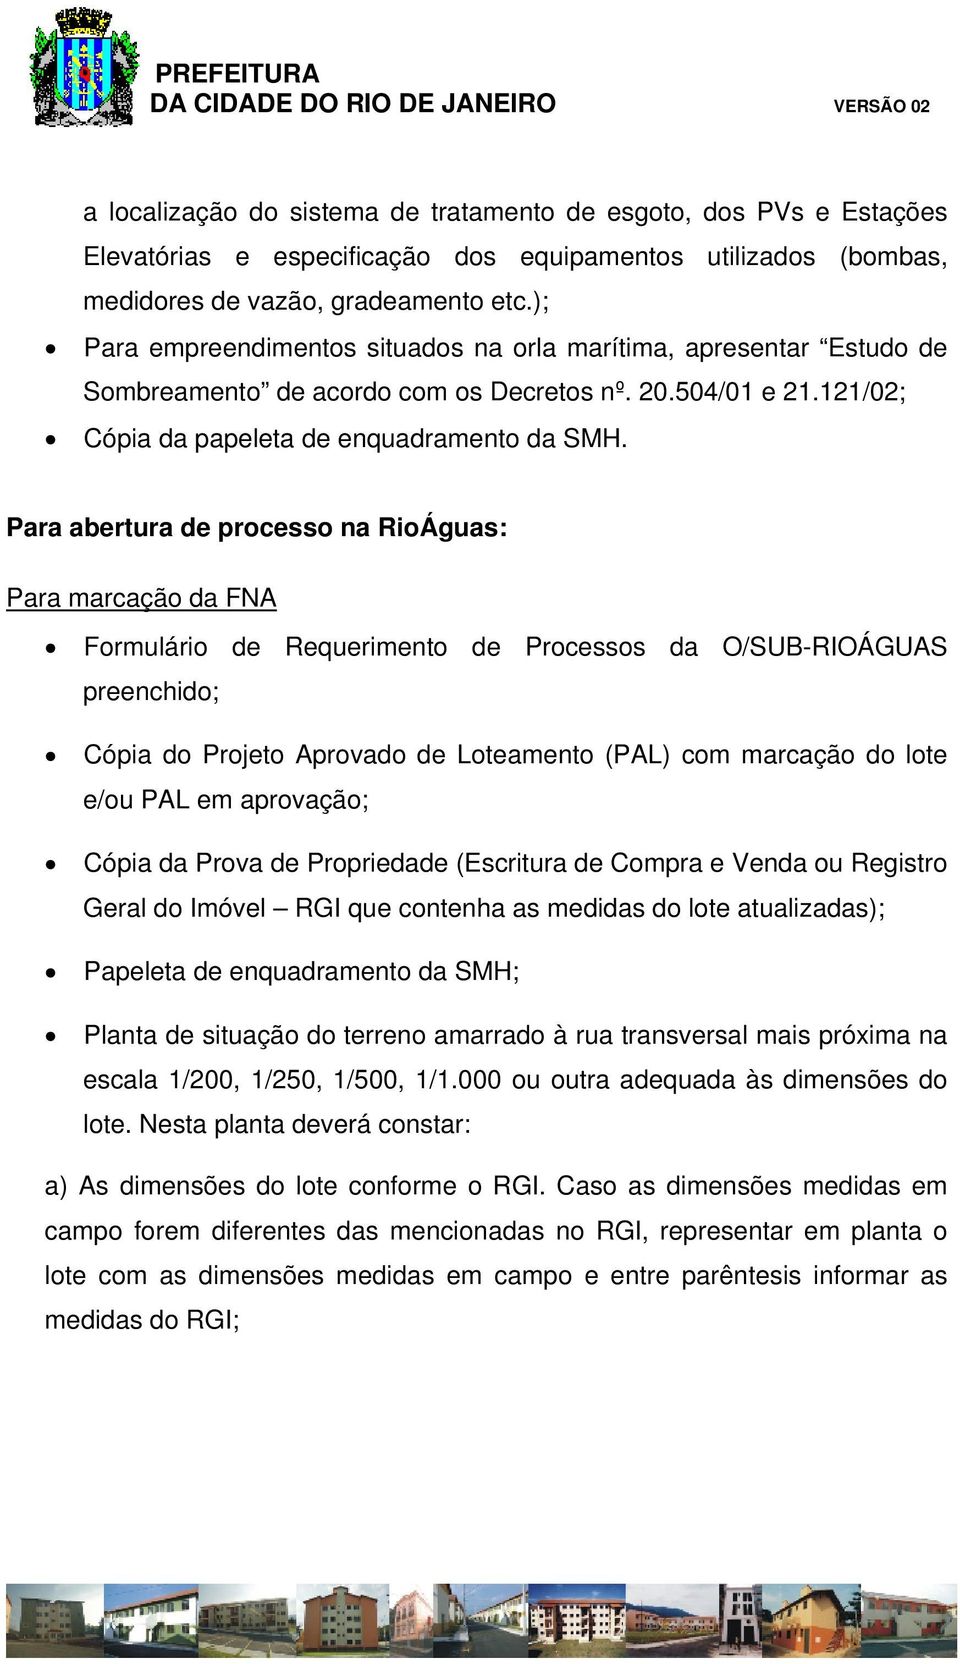 Para abertura de processo na RioÁguas: Para marcação da FNA Formulário de Requerimento de Processos da O/SUB-RIOÁGUAS preenchido; Cópia do Projeto Aprovado de Loteamento (PAL) com marcação do lote